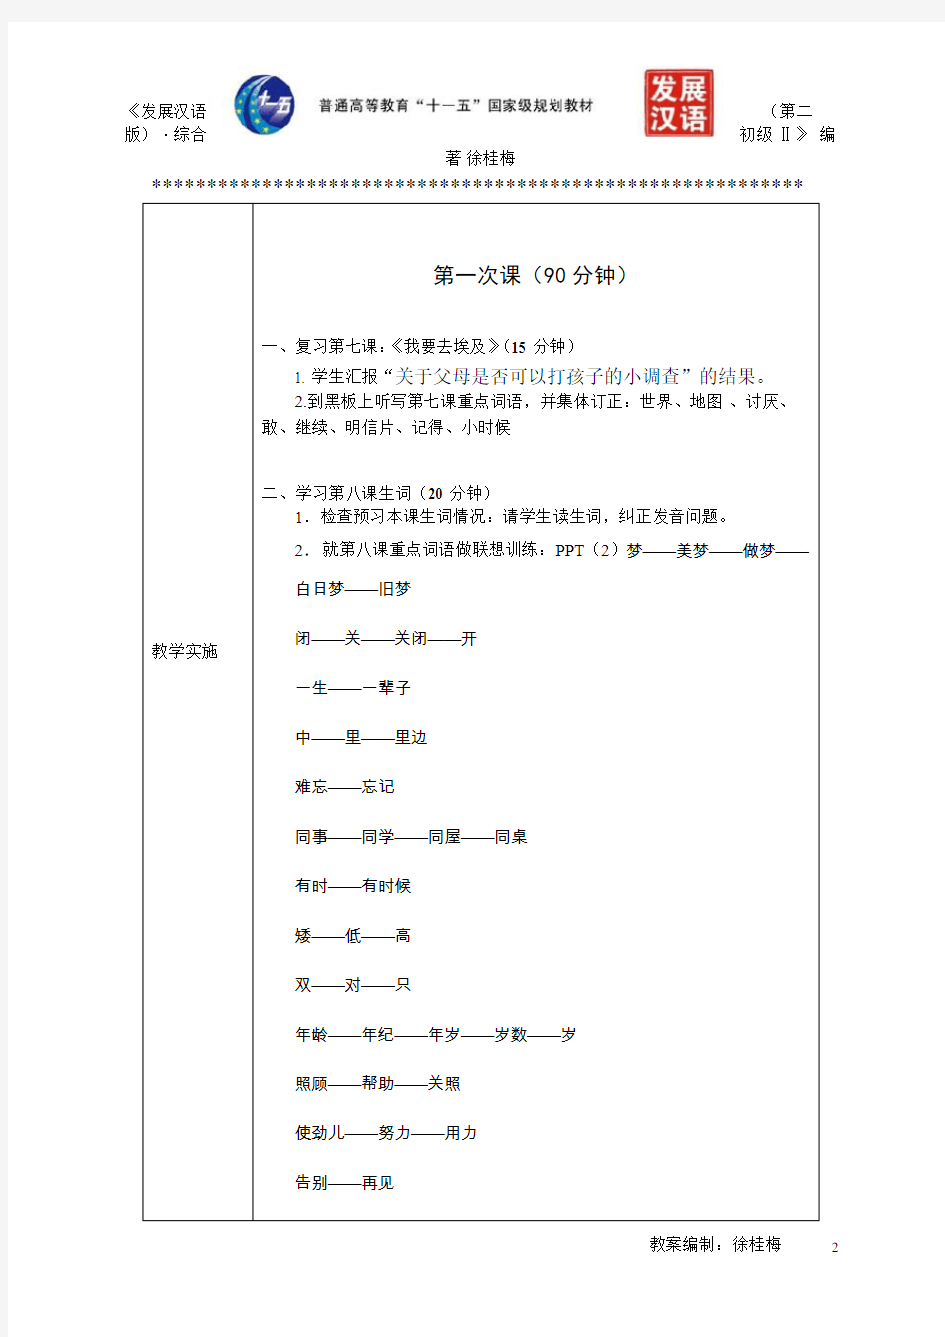 《发展汉语(第二版)综合初级Ⅱ》教案第8课《旧梦》